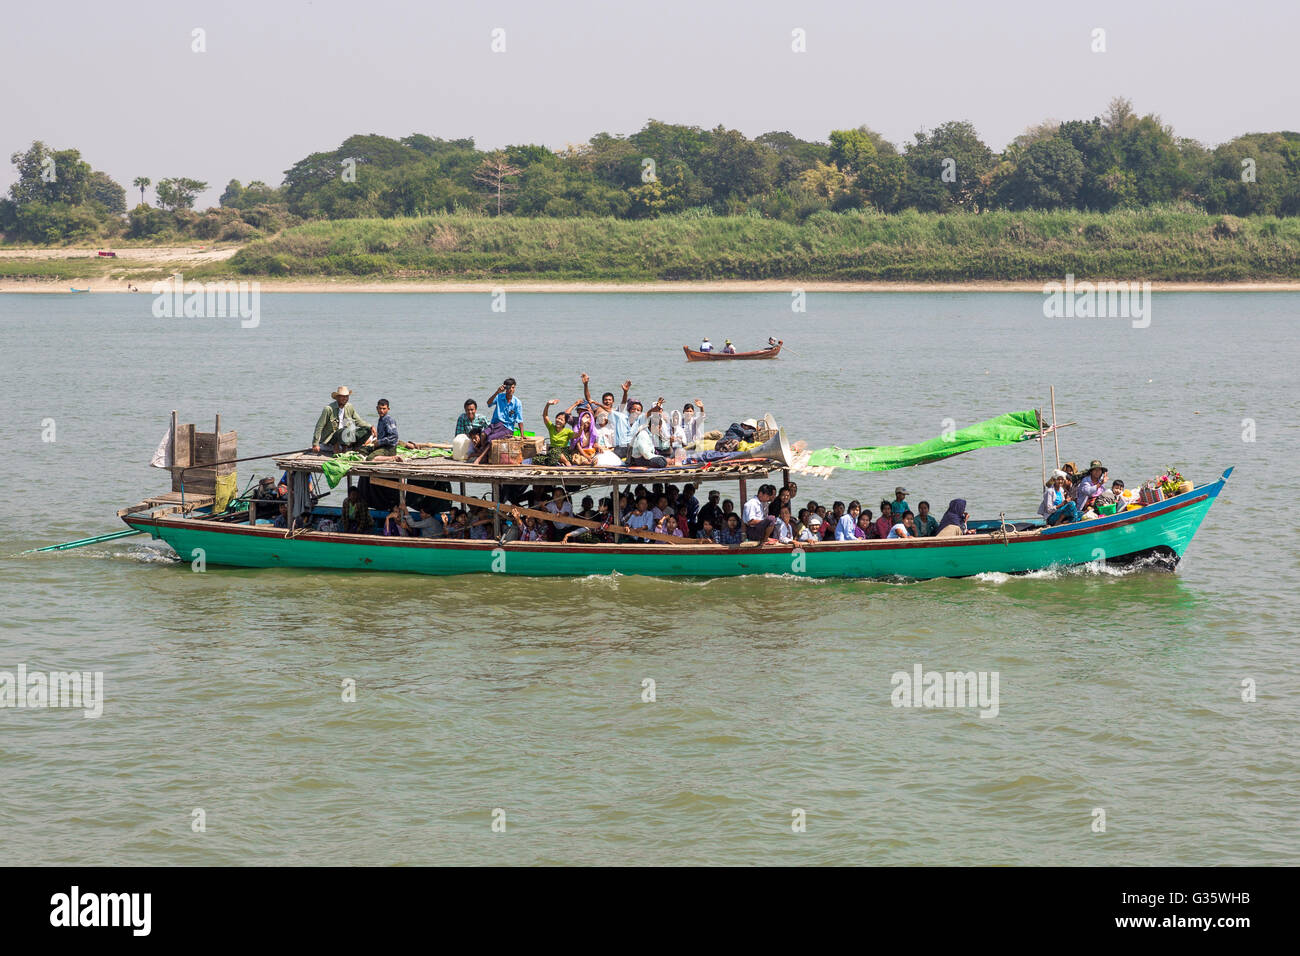 Boats and small ferries between Bagan and Mandalay along the Irrawaddy river (Ayeyarwady river), Burma, Myanmar, South Asia Stock Photo